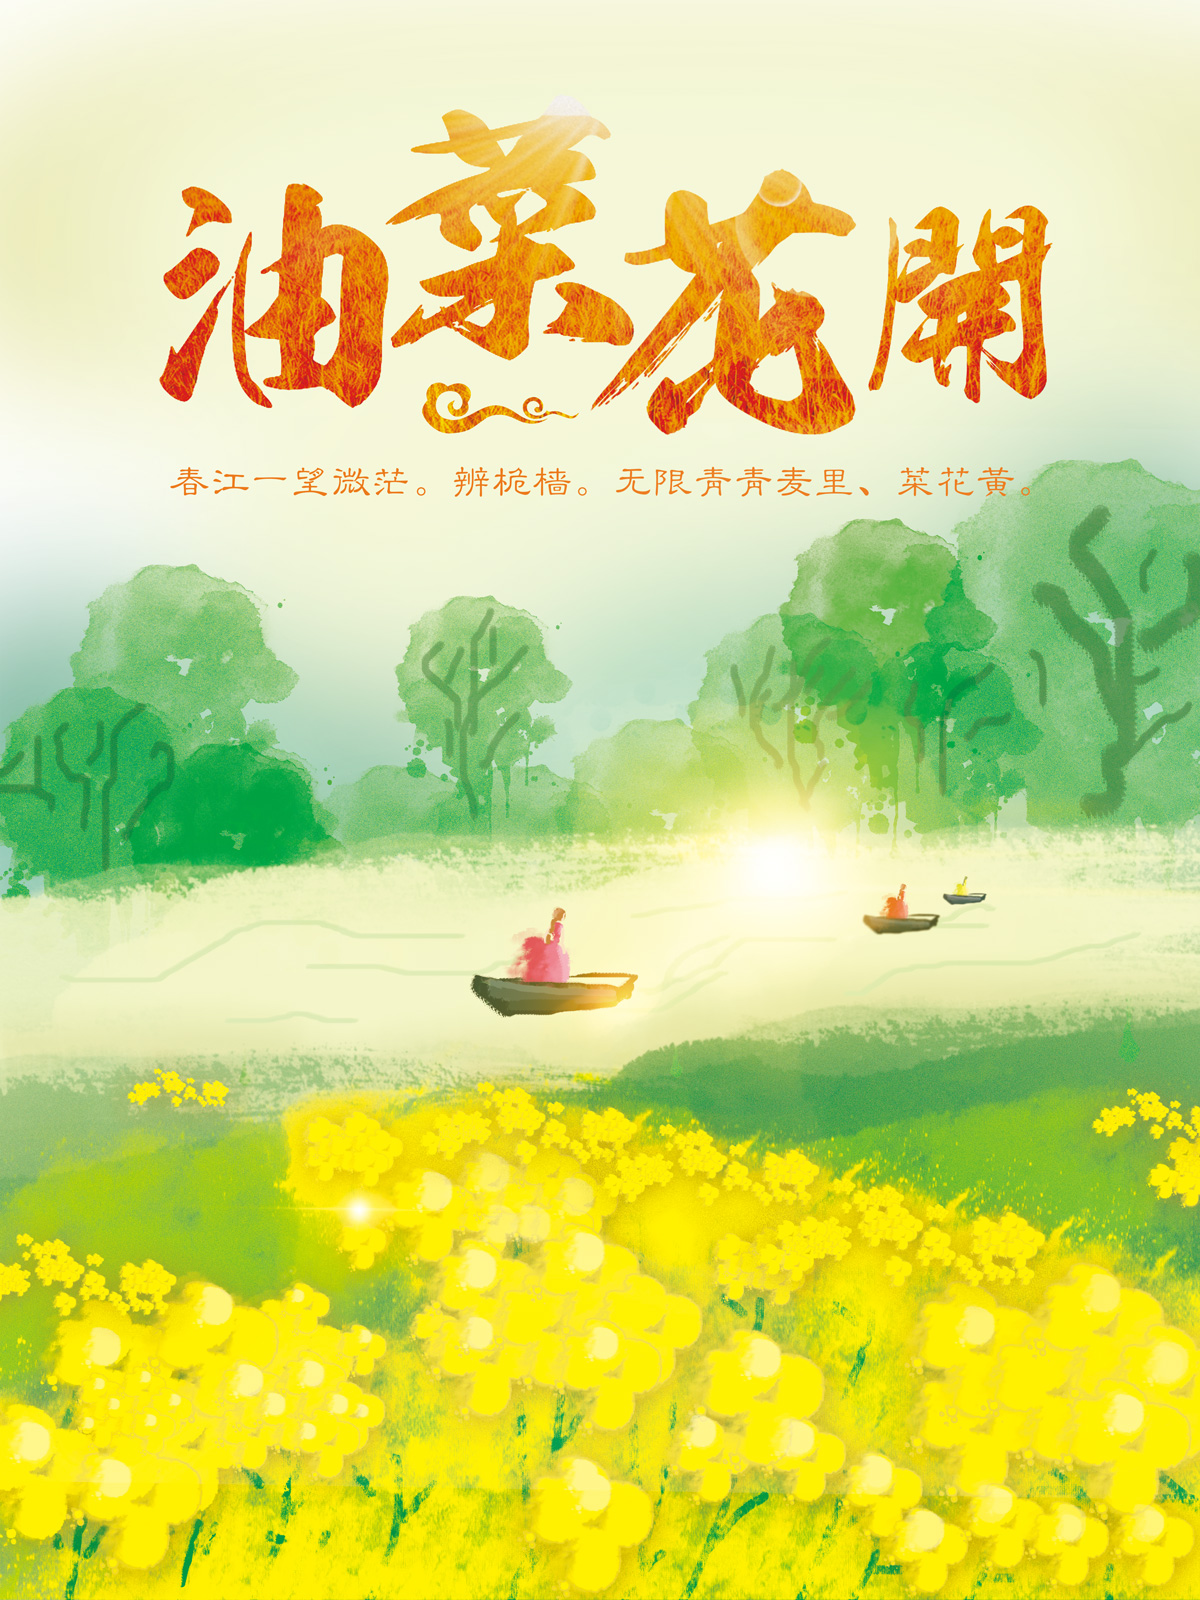 Beautiful cauliflower China PSD File Free Download